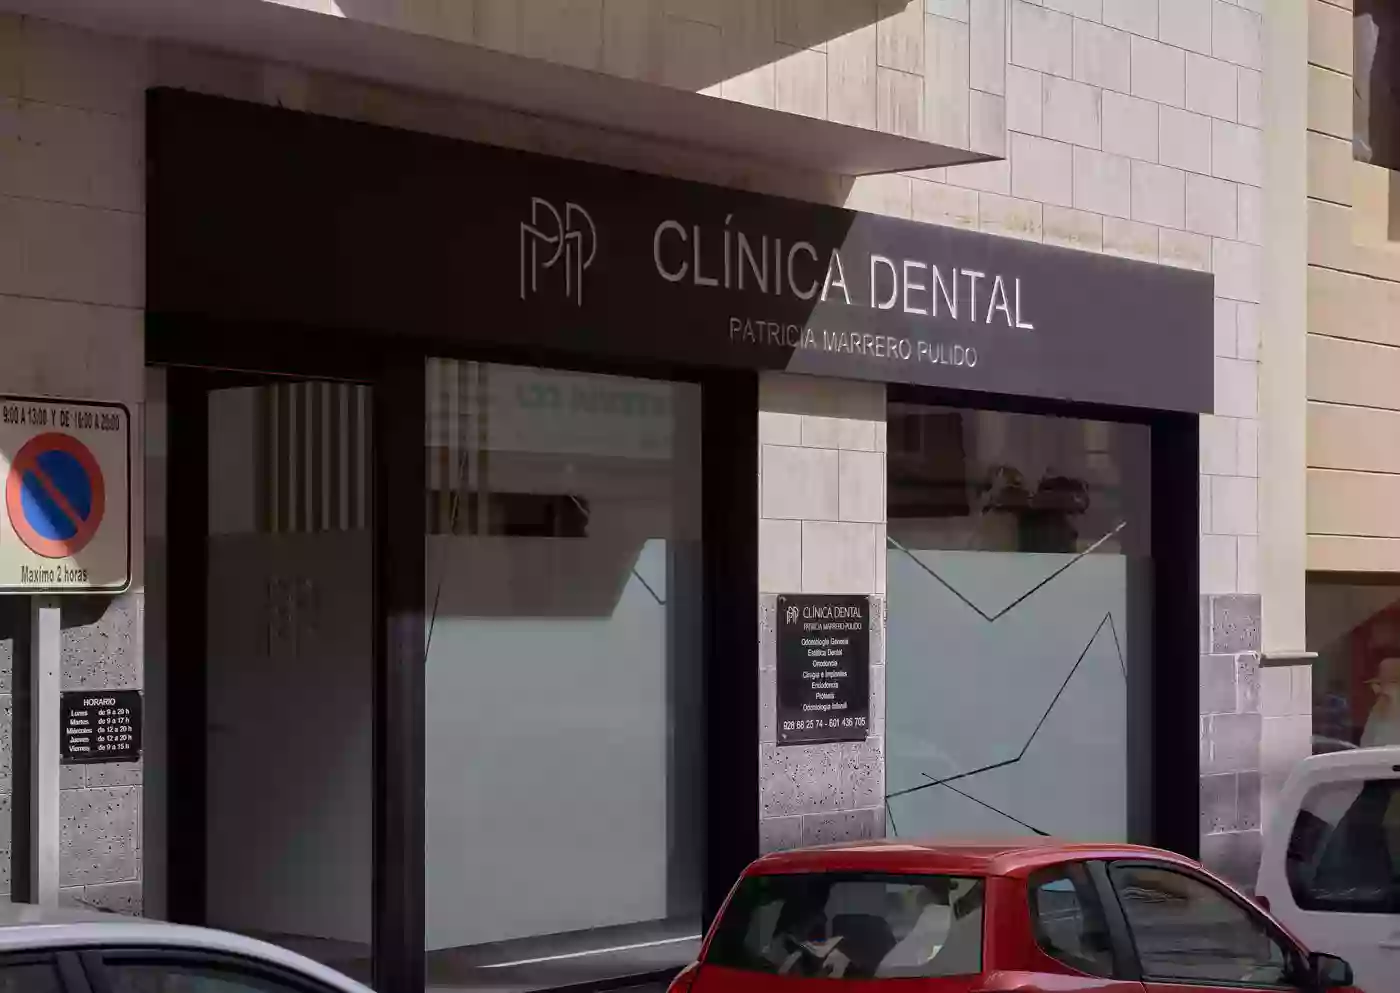 Clinica dental Patricia Marrero